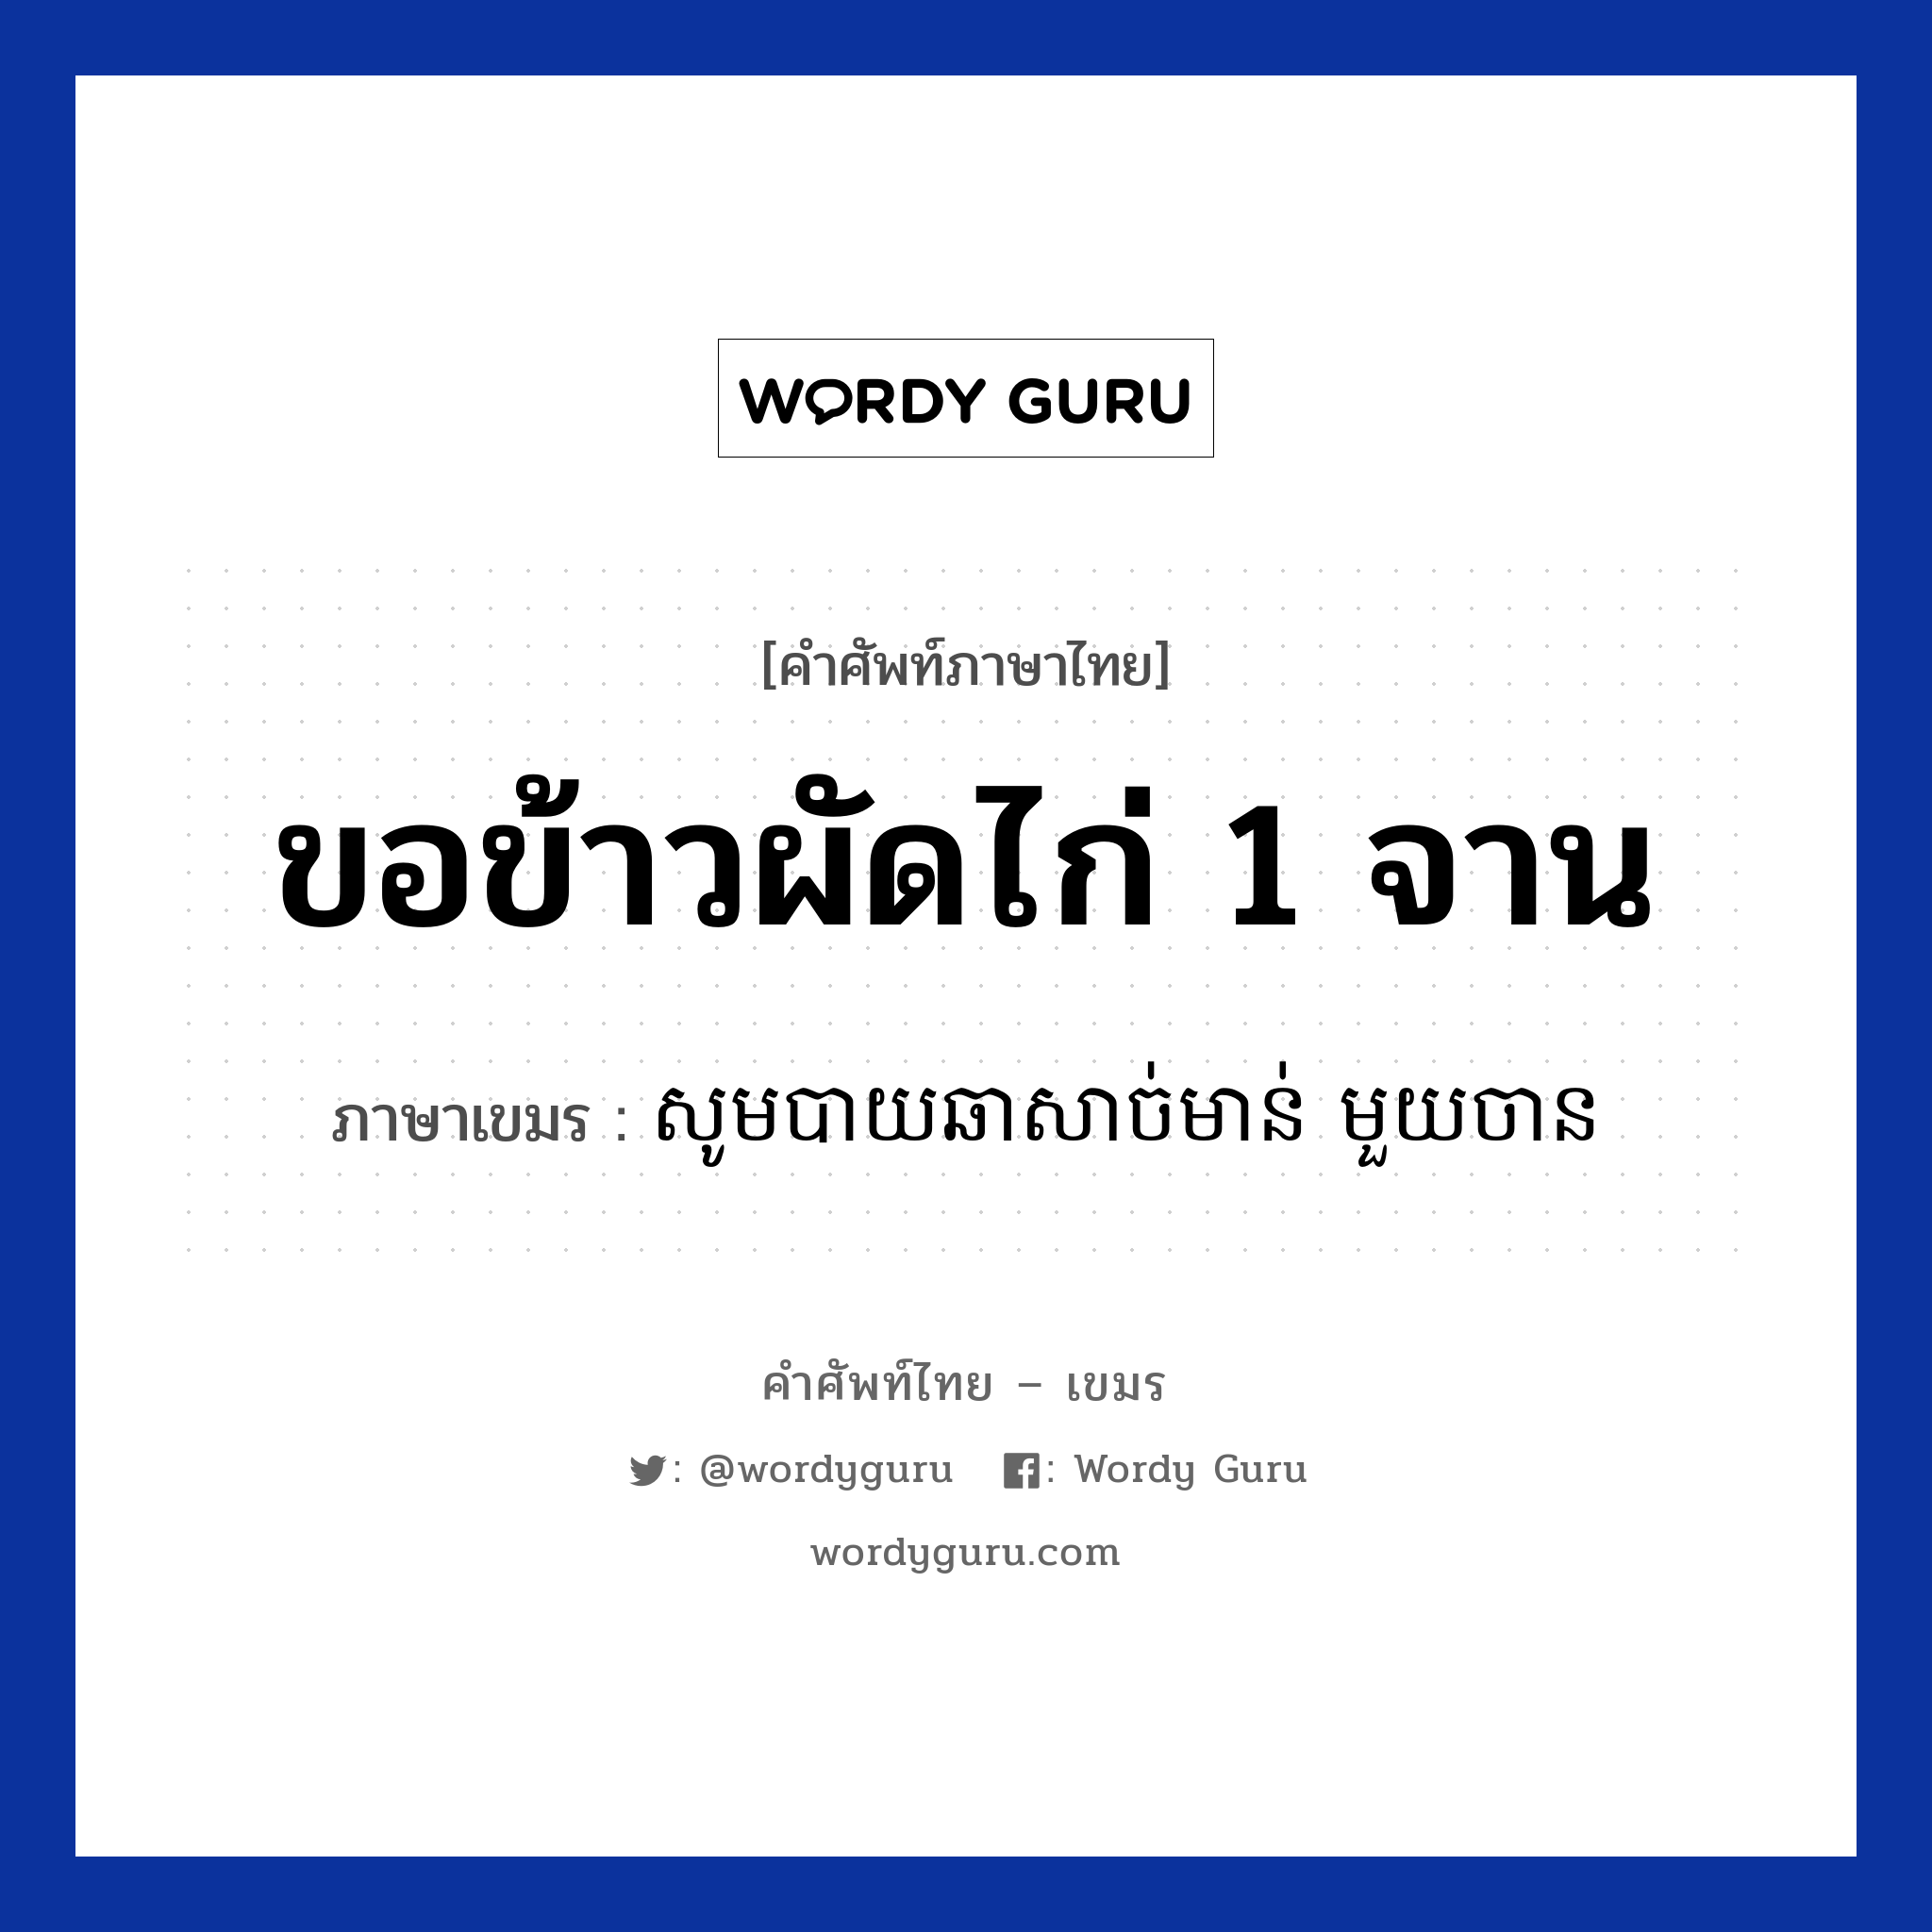 ขอข้าวผัดไก่ 1 จาน ภาษาเขมรคืออะไร, คำศัพท์ภาษาไทย - เขมร ขอข้าวผัดไก่ 1 จาน ภาษาเขมร សូមបាយឆាសាច់មាន់ មួយចាន หมวด บทสนทนาเกี่ยวกับอาหาร Som baichasachmoun mouy chan หมวด บทสนทนาเกี่ยวกับอาหาร